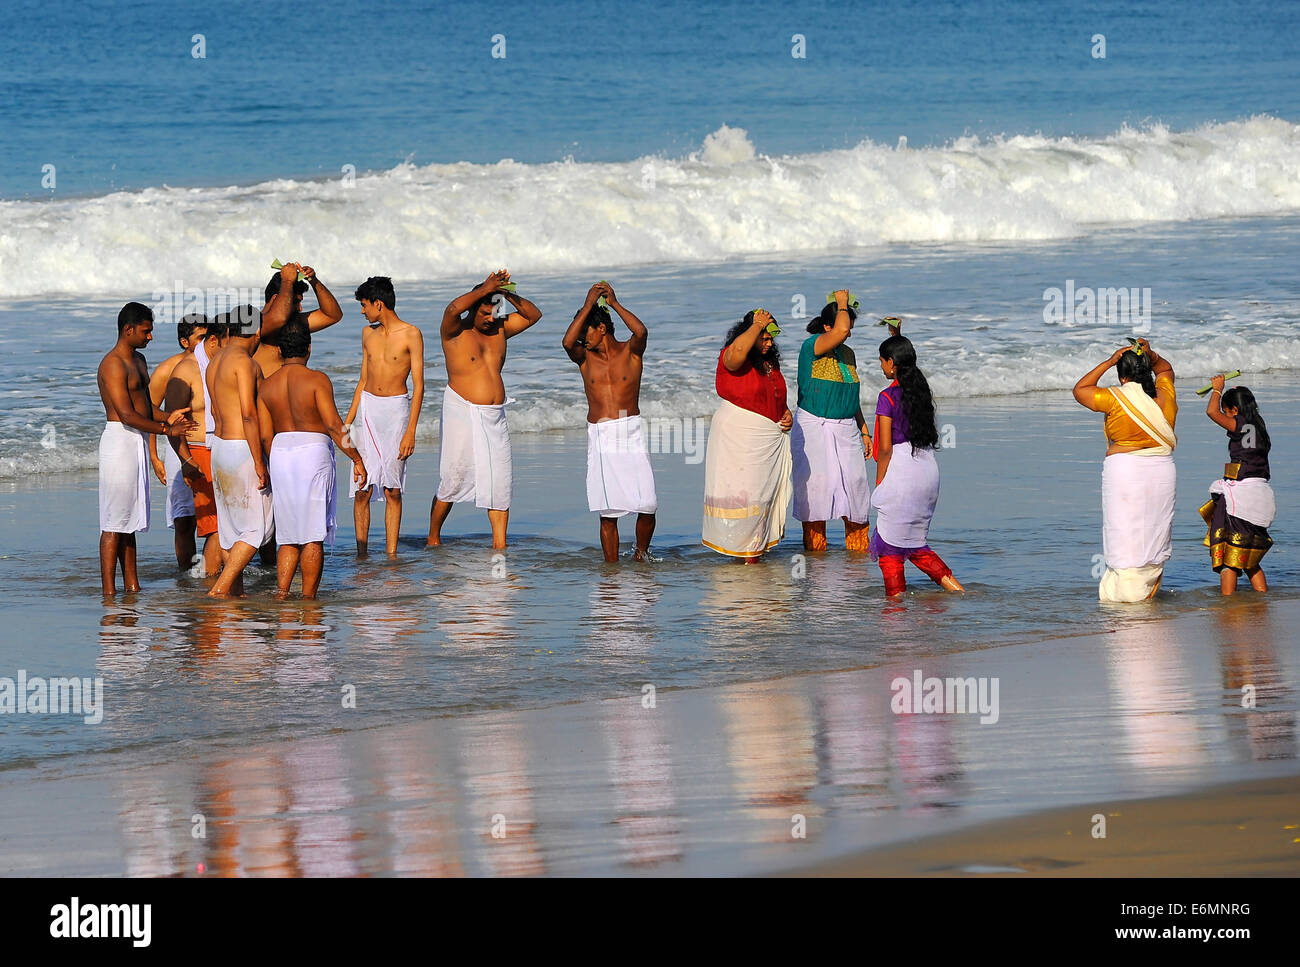 Funeral ceremony on the beach, Arabian Sea, Varkala, Kerala, South India, India Stock Photo